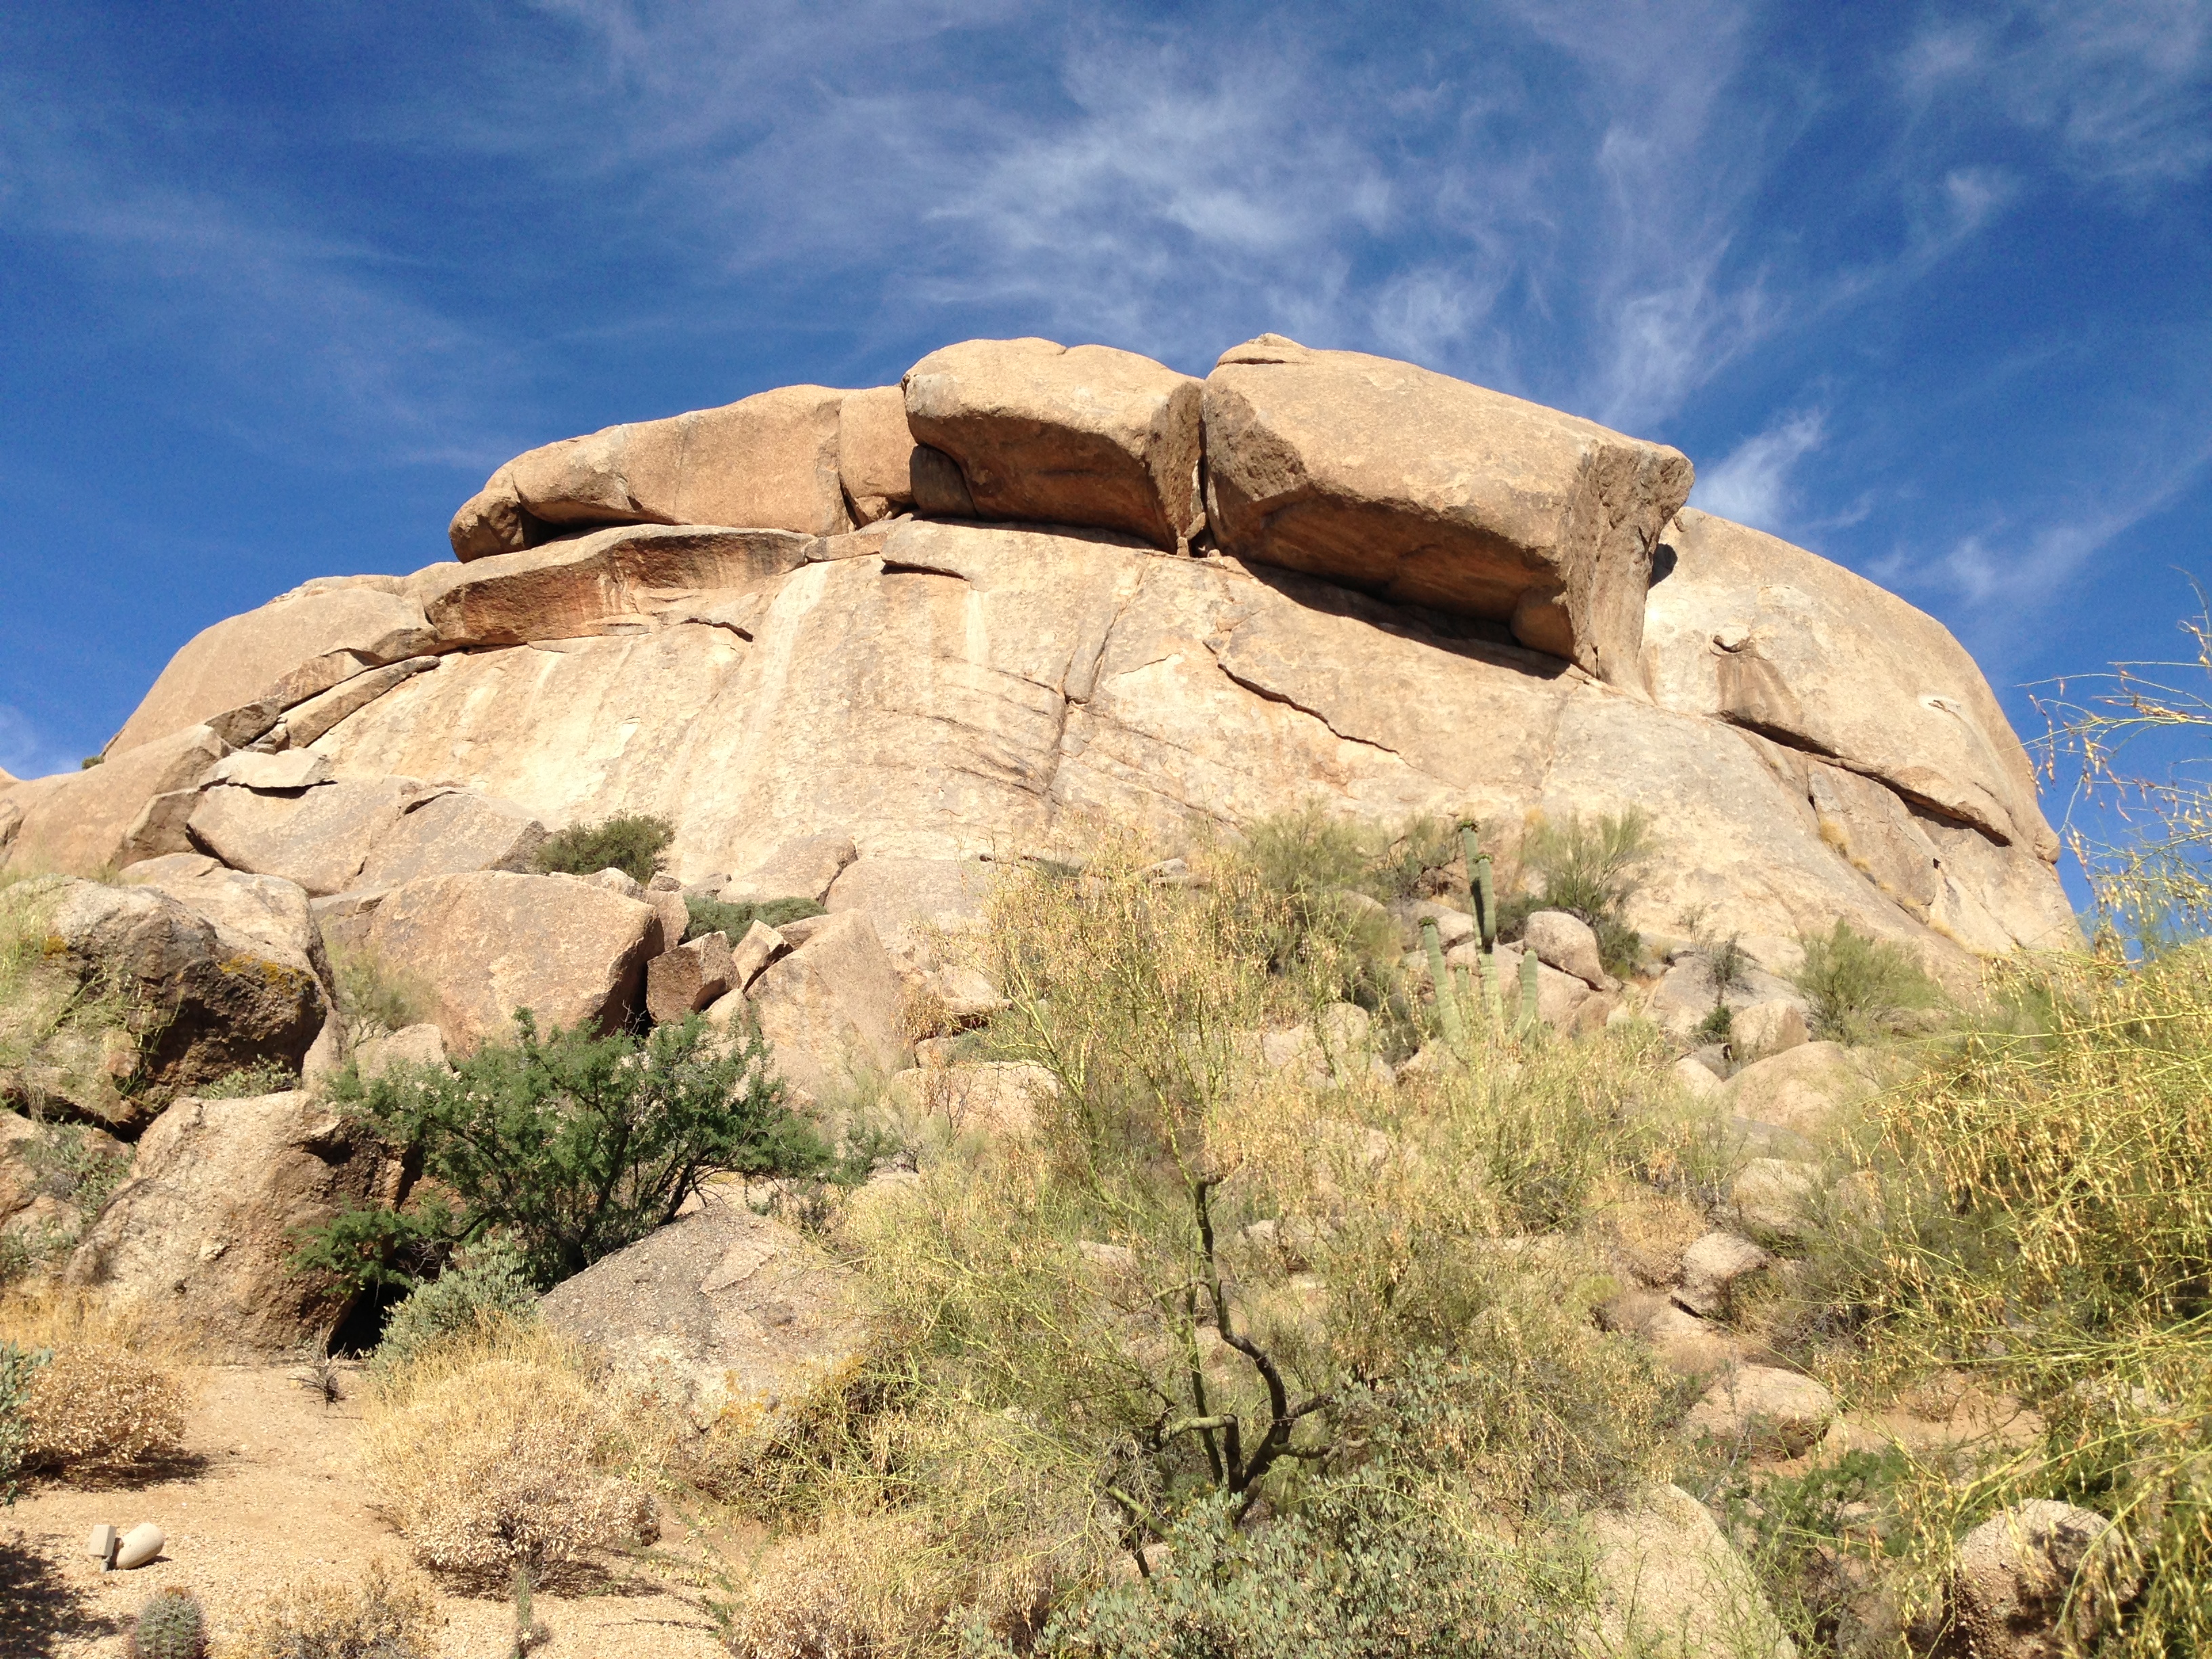 The Boulders, Scottsdale, AZ